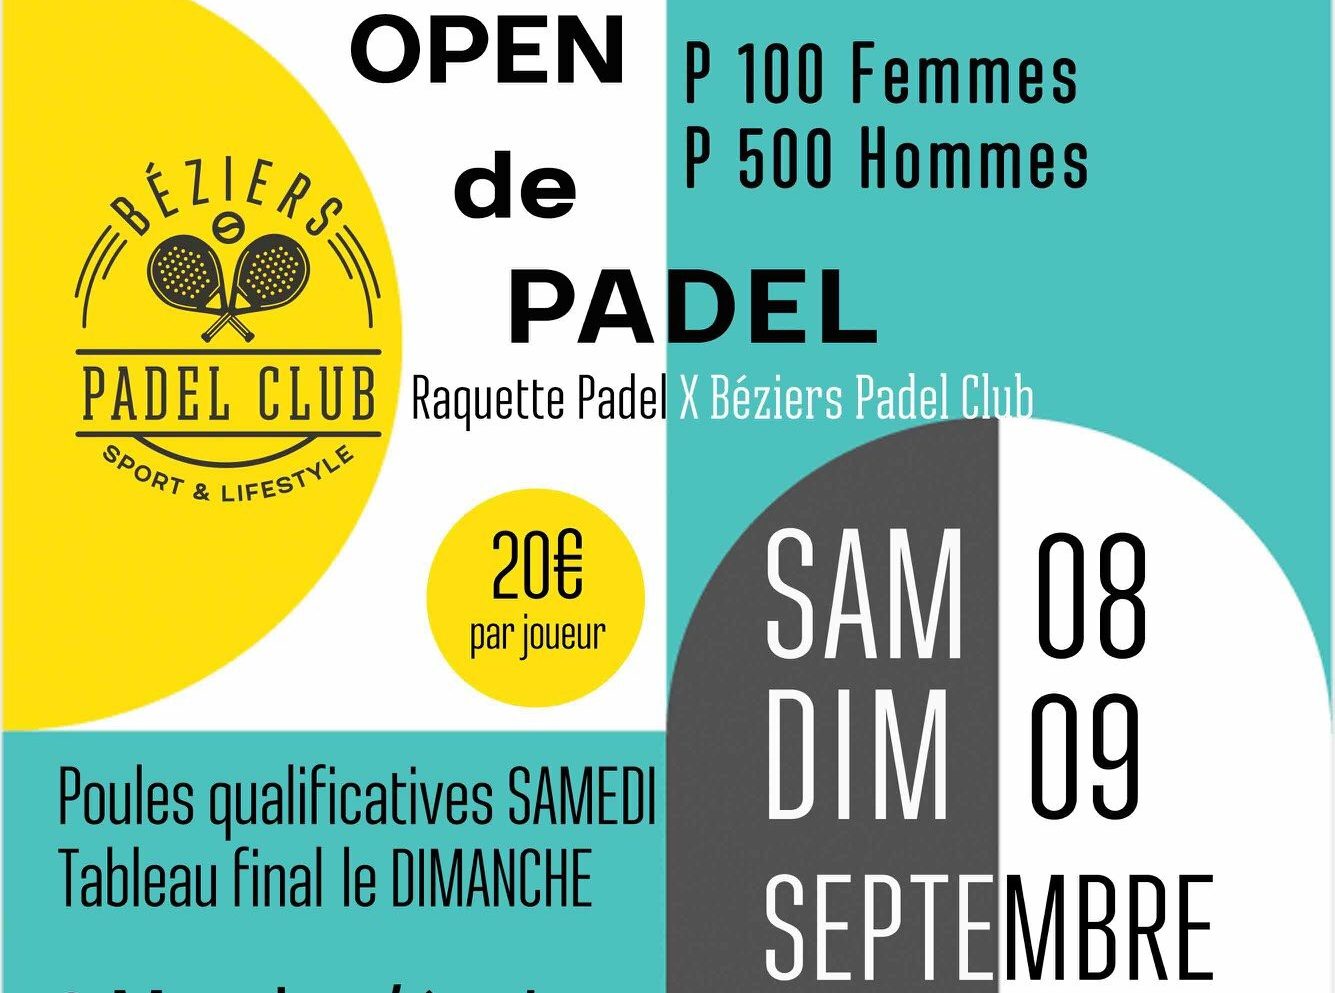 Die Béziers Padel Der Club bietet sein erstes großes Turnier an padel